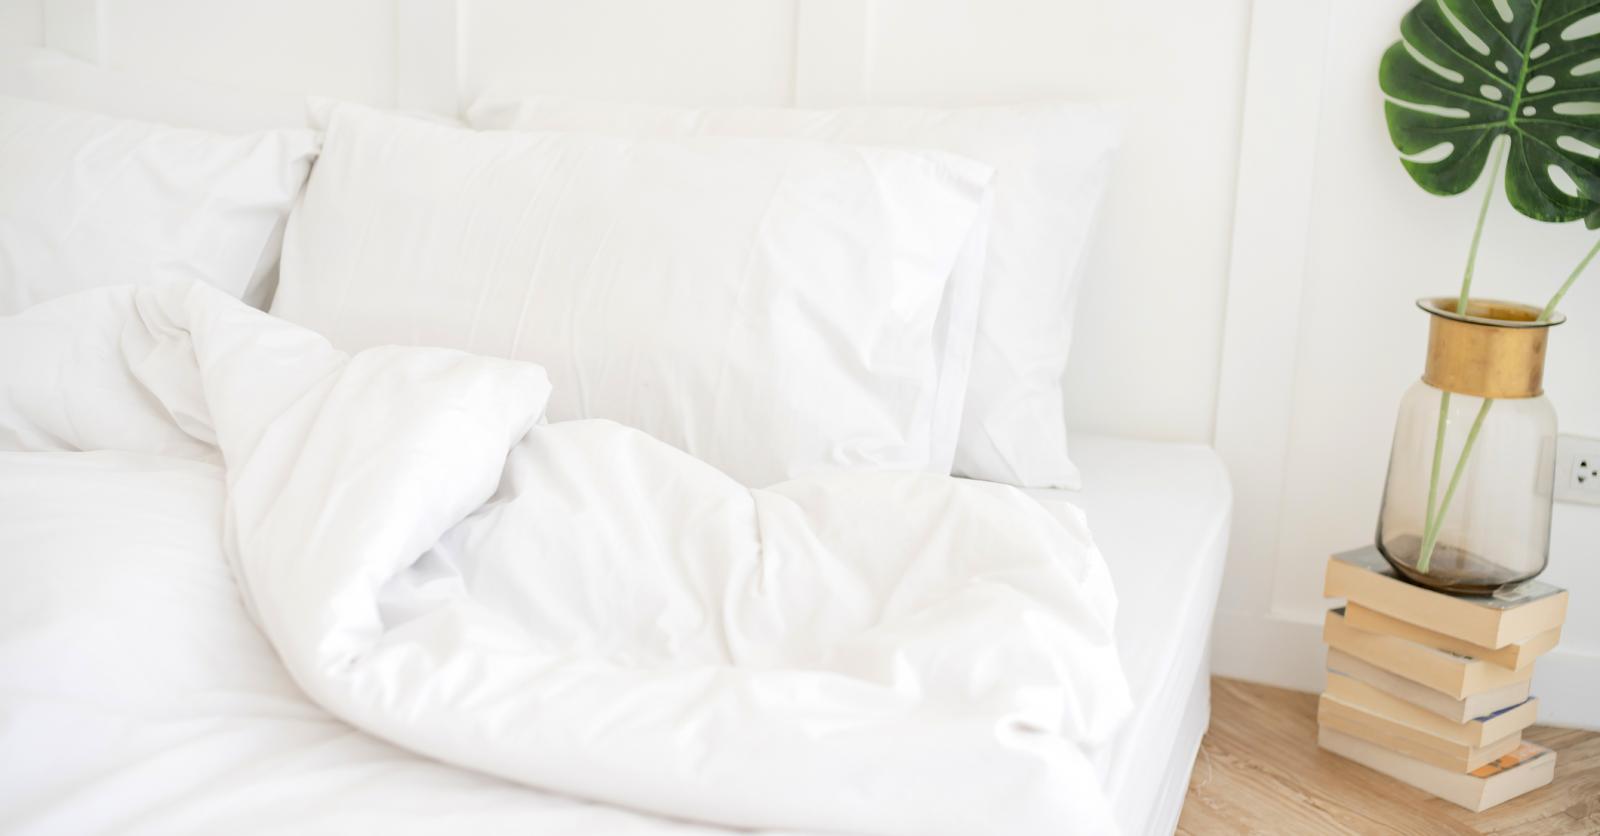 Oreiller pour son lit : Comment s'y prendre pour bien choisir? - Le blog